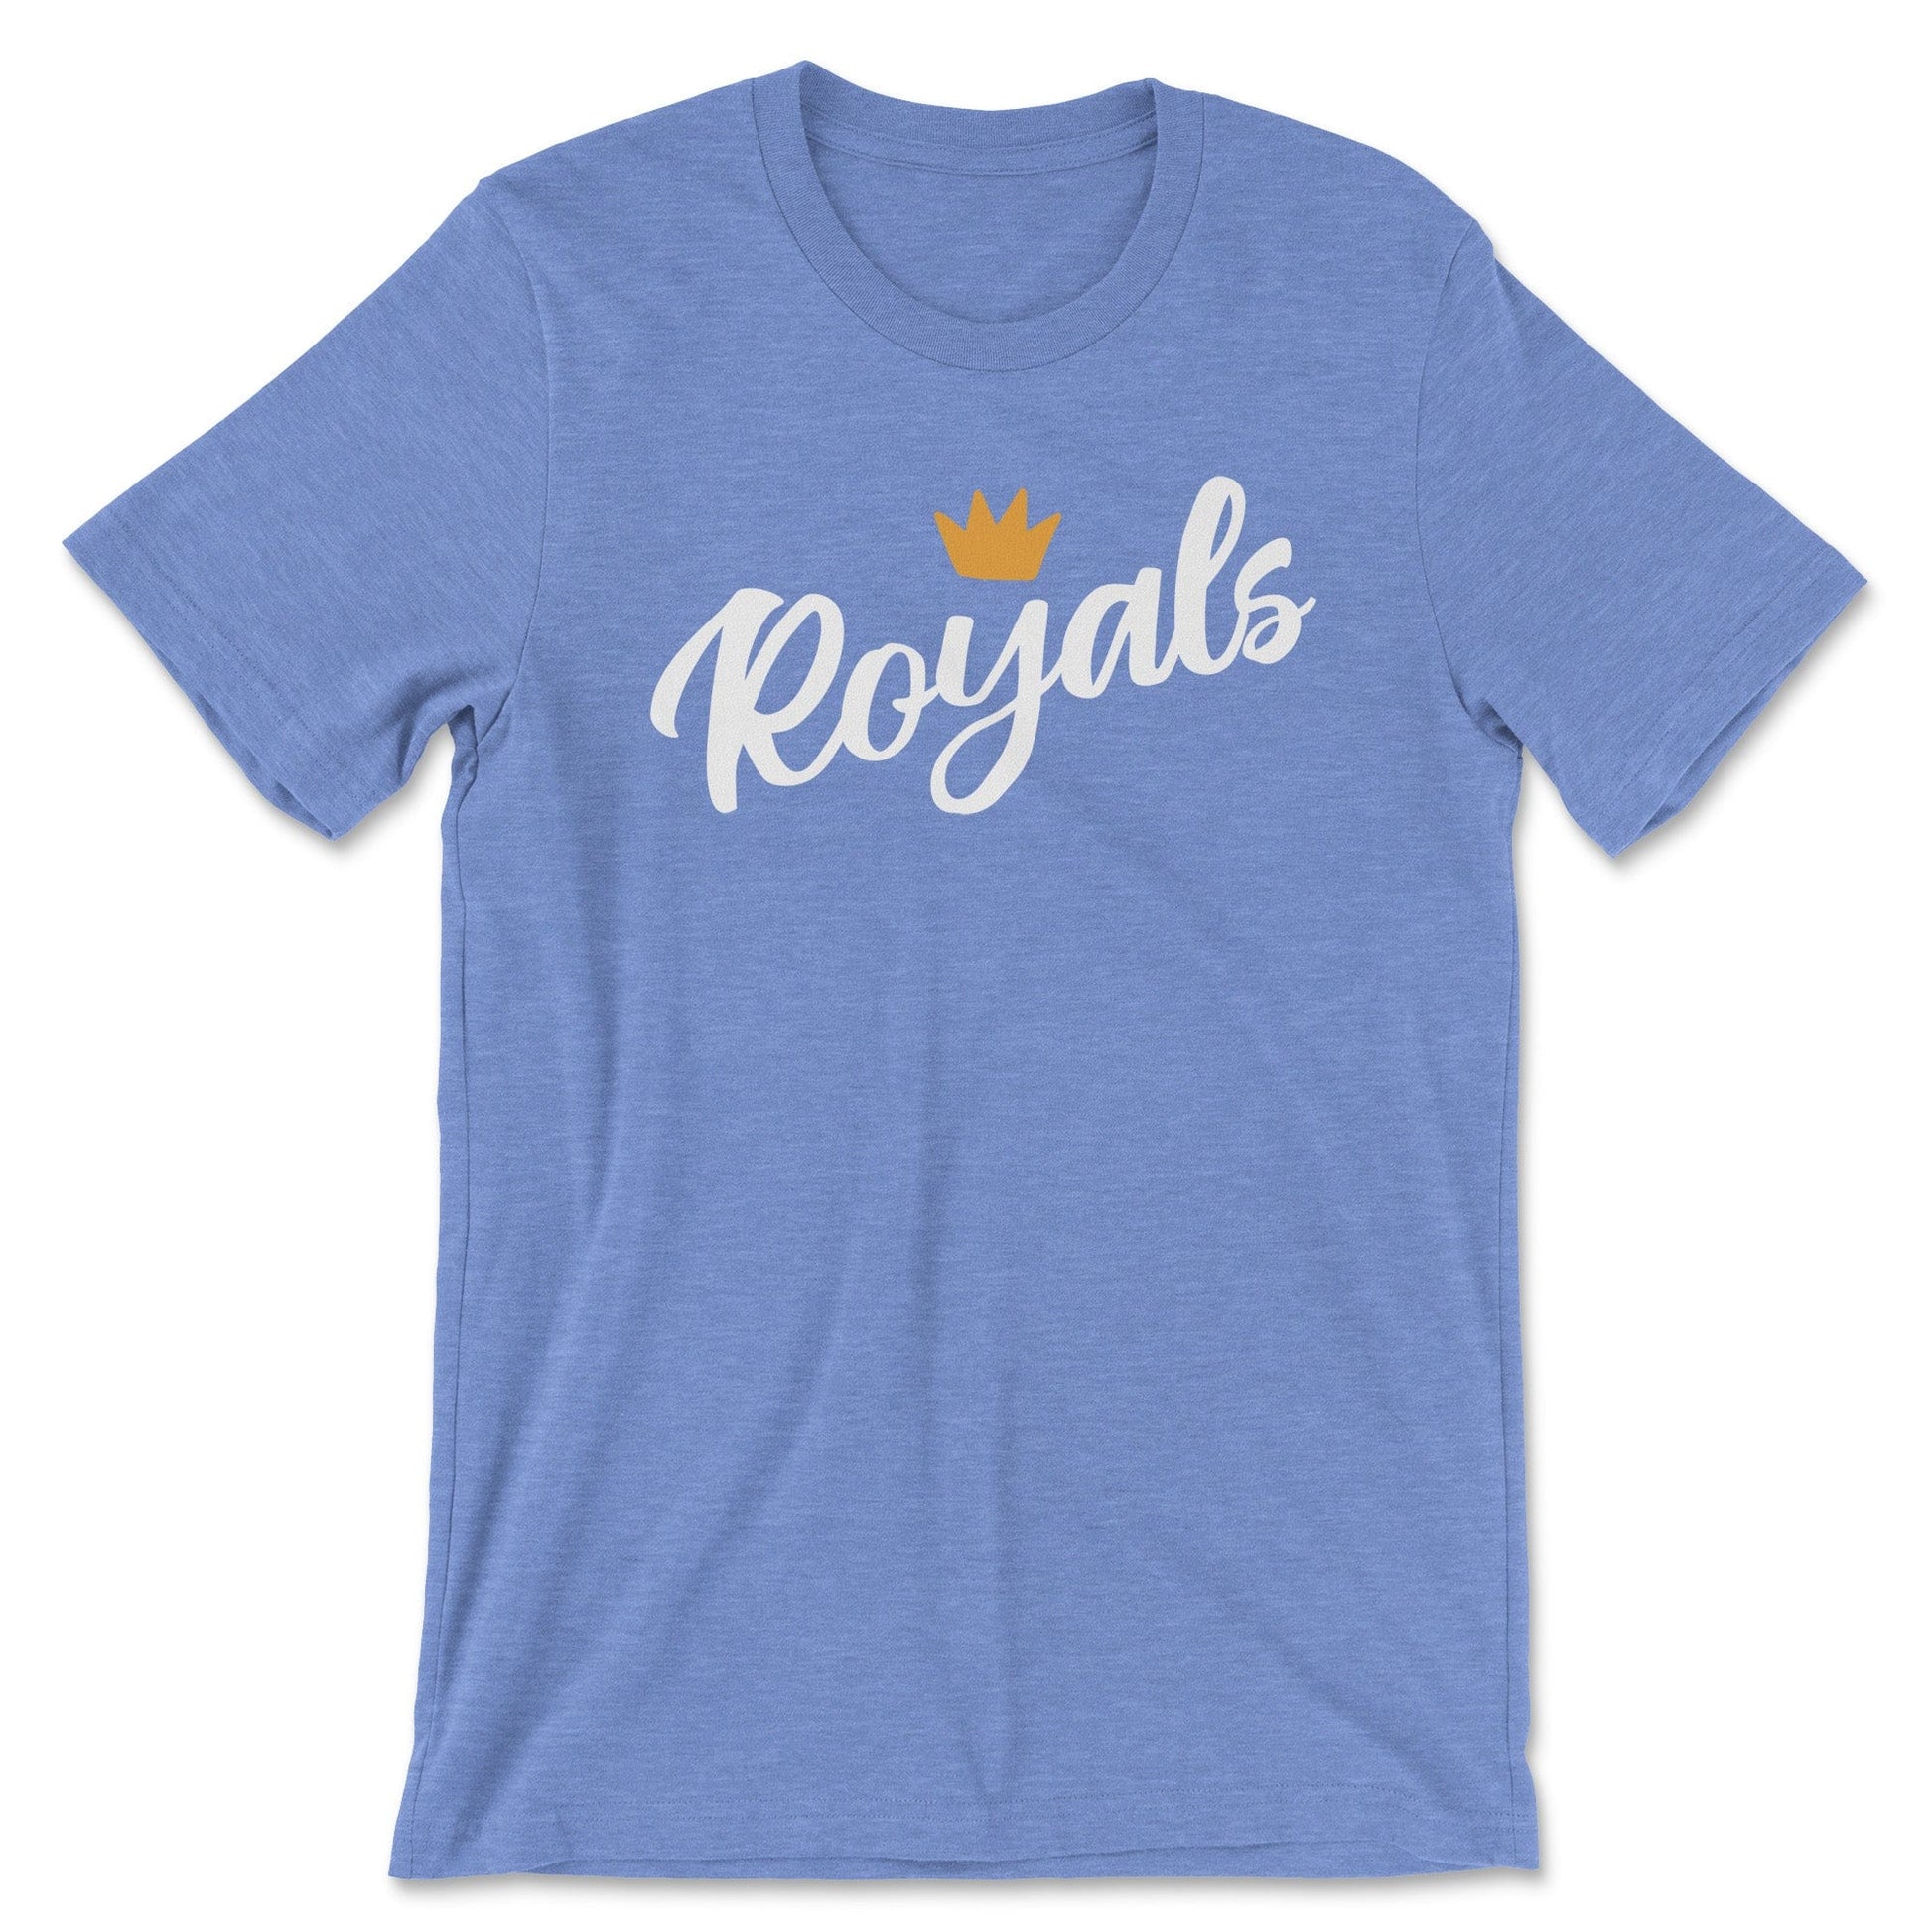 Crown R  Royals baseball, Royals baseball shirt, Kansas city royals